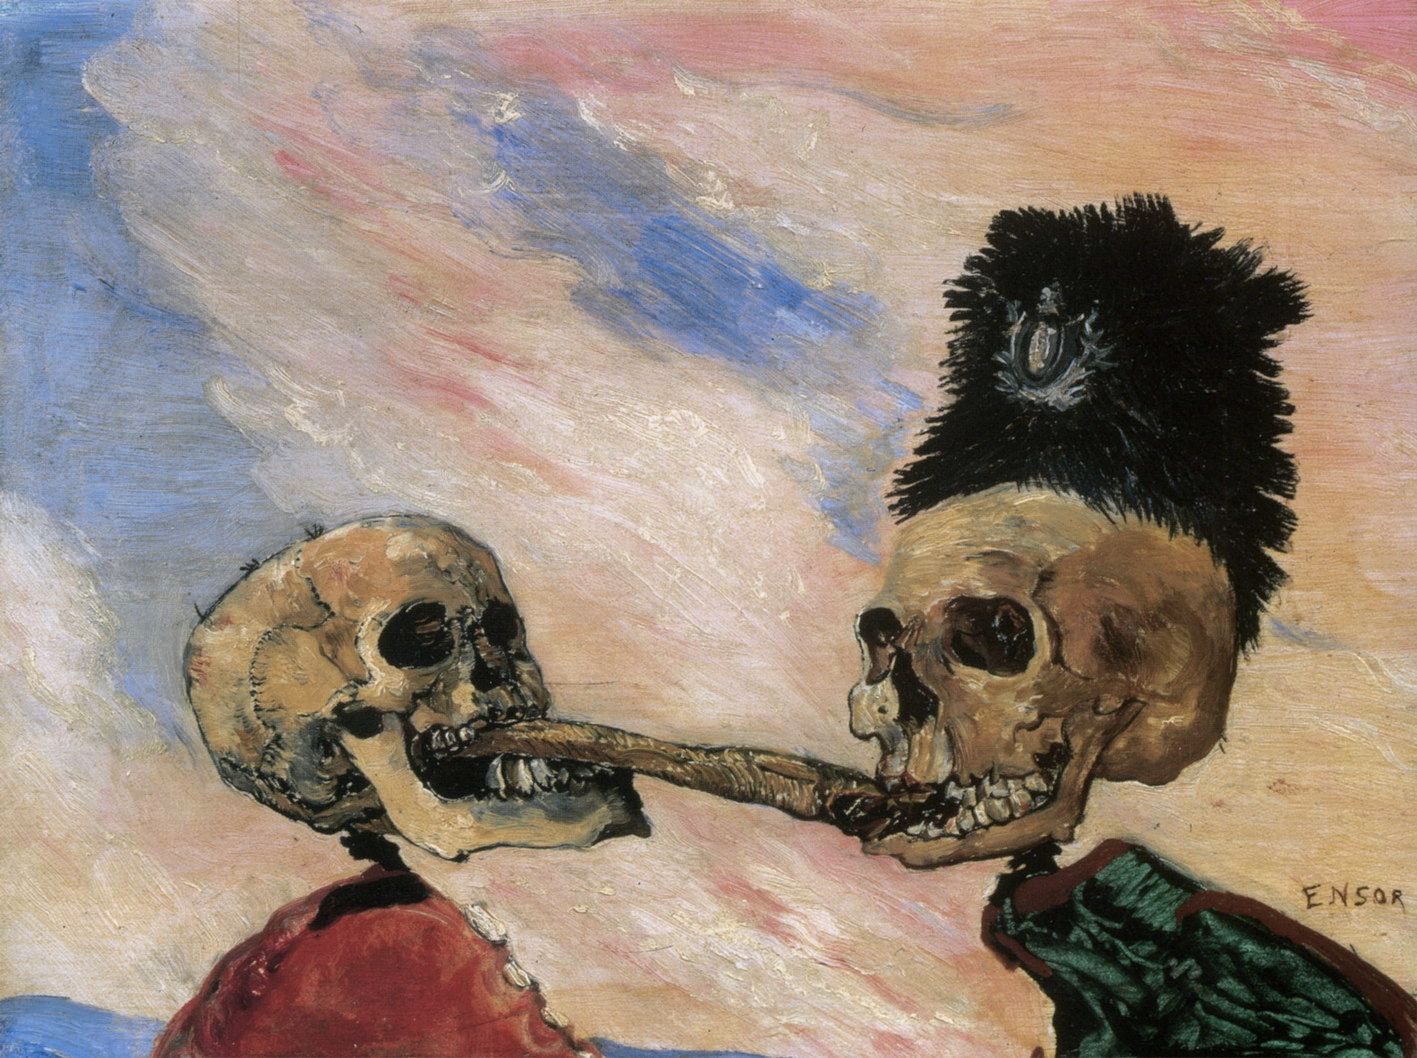 Fig 6. James Ensor. Esqueletos disputando um arenque fumado. 1891.